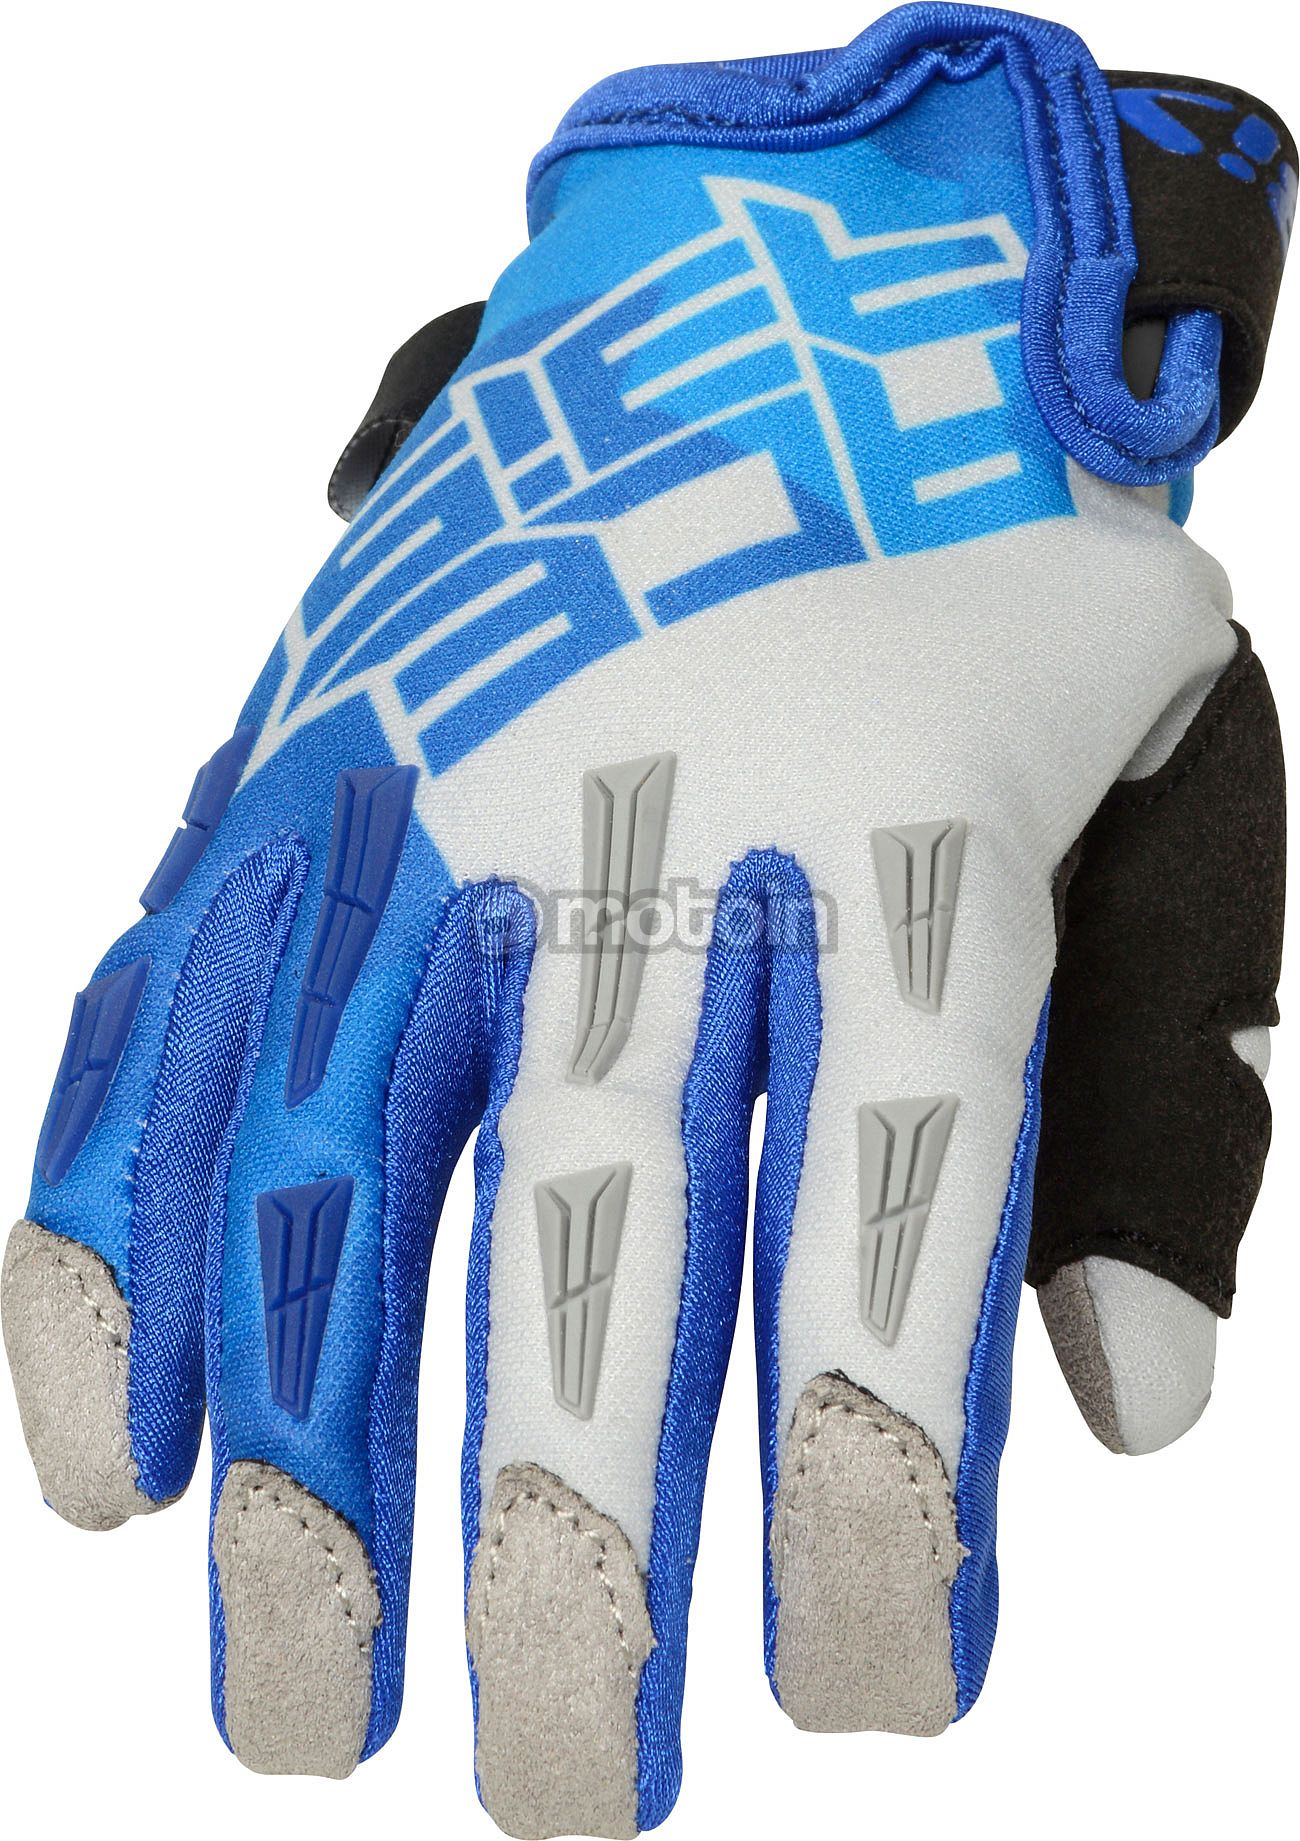 Acerbis MX X-K S23, Handschuhe Kinder